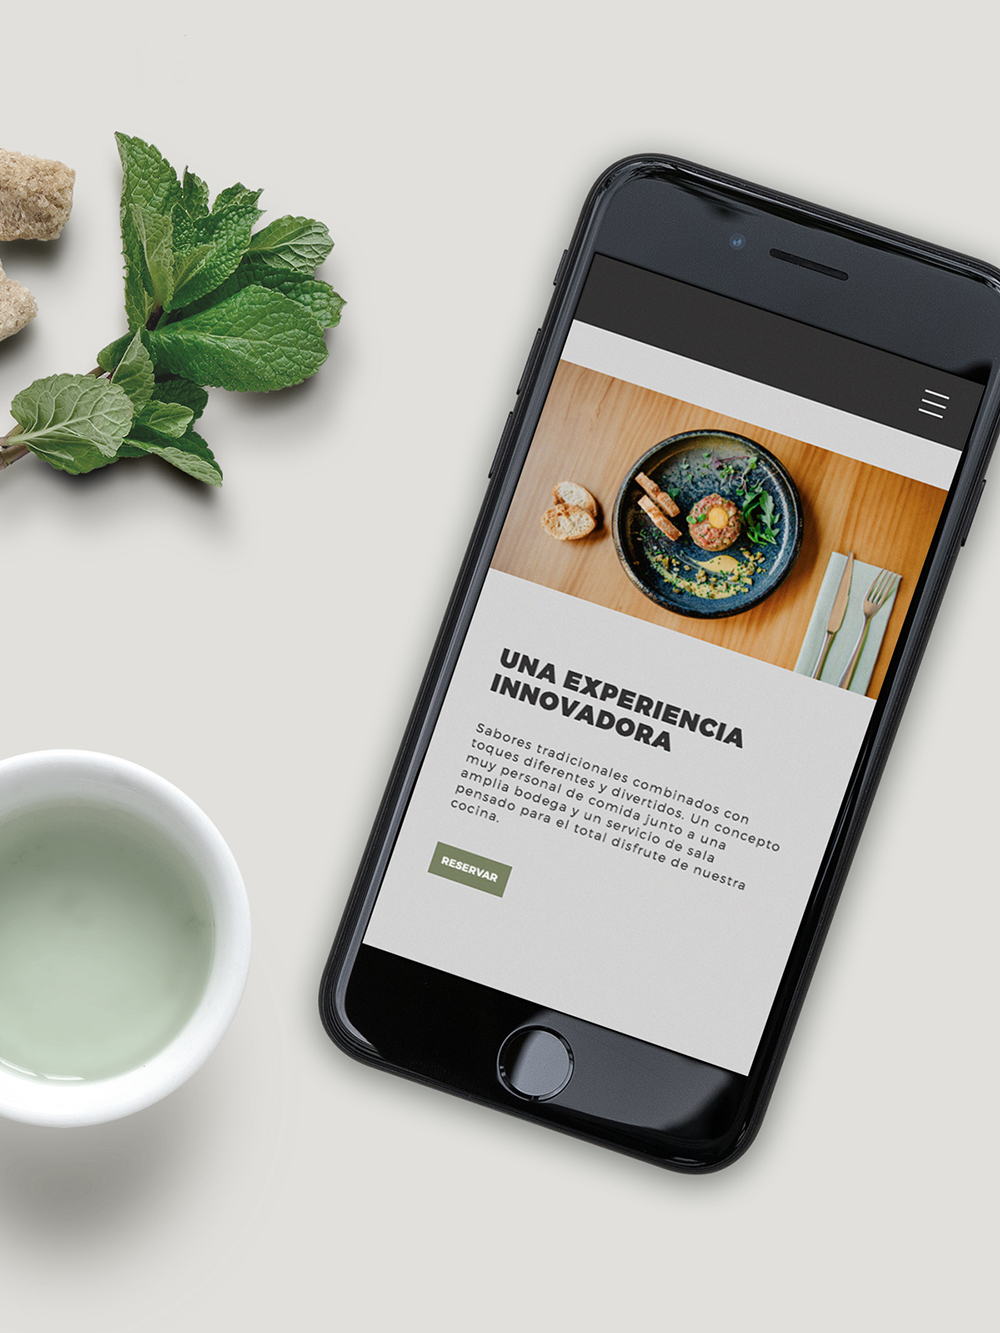 Diseño y desarrollo de website corporativo para restaurante Mondo. Vista detalle web iPhone.